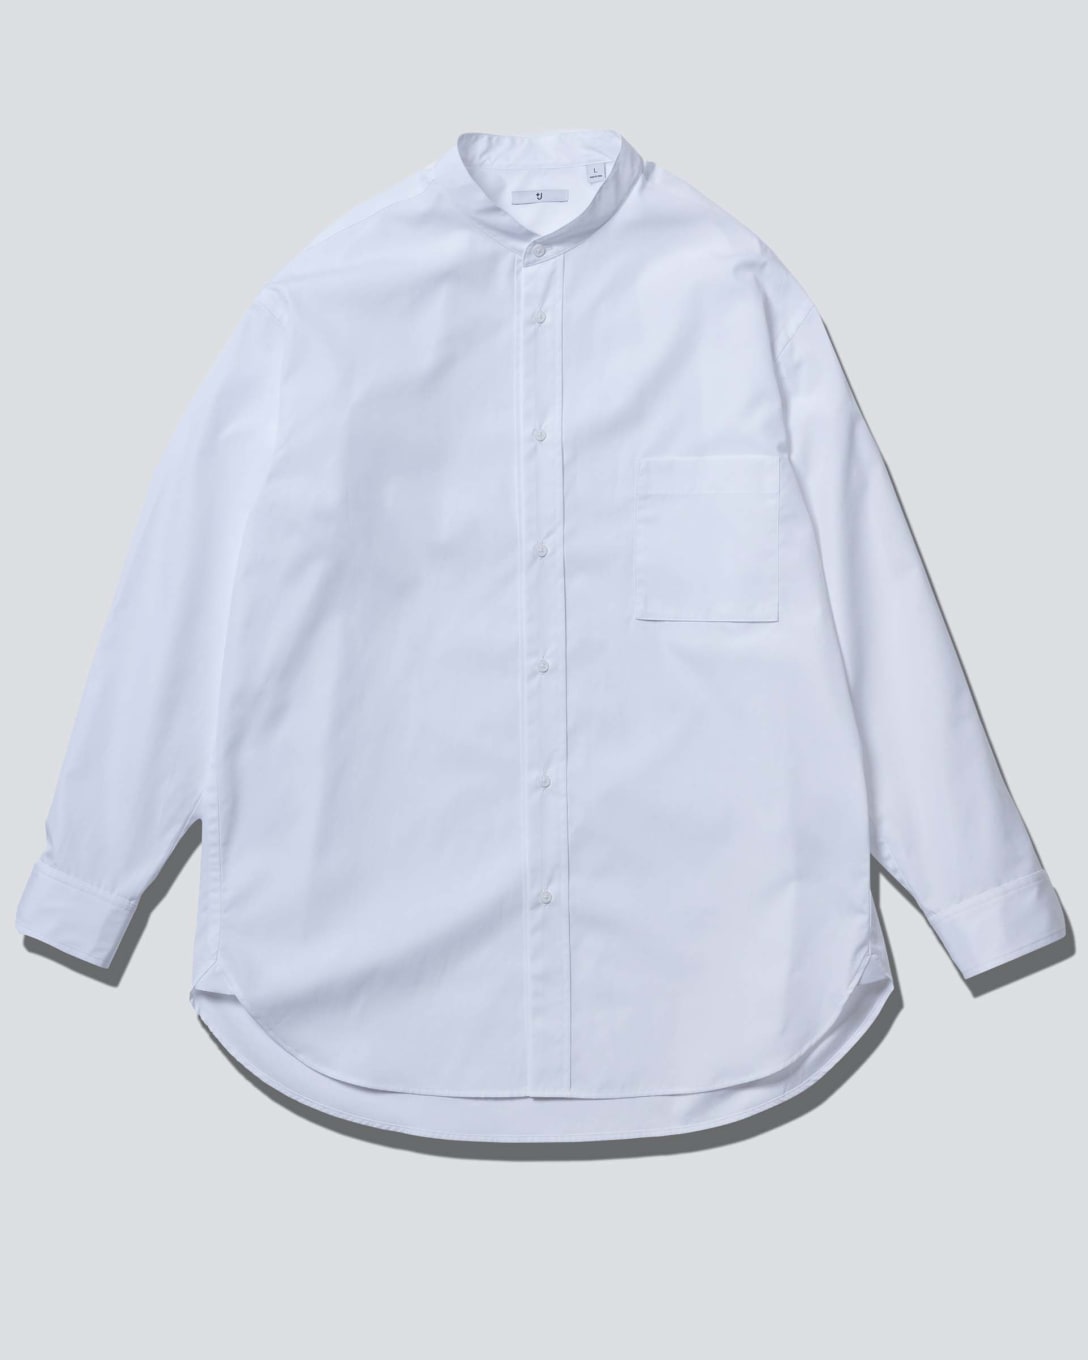 スーピマコットンオーバーサイズスタンドカラーシャツ（ホワイト、3990円） Image by FASHIONSNAP